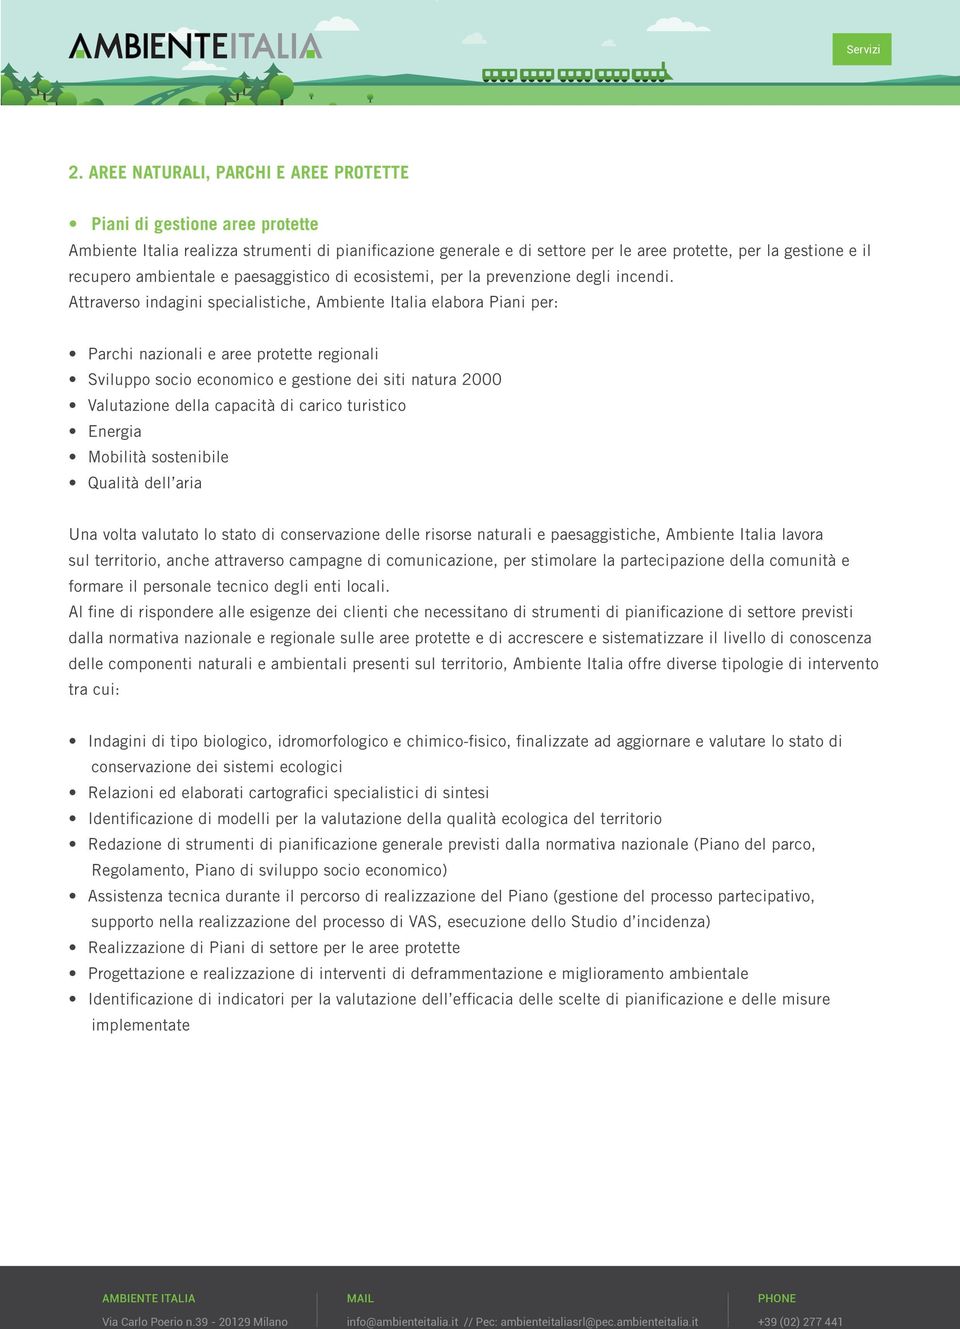 Attraverso indagini specialistiche, Ambiente Italia elabora Piani per: Parchi nazionali e aree protette regionali Sviluppo socio economico e gestione dei siti natura 2000 Valutazione della capacità